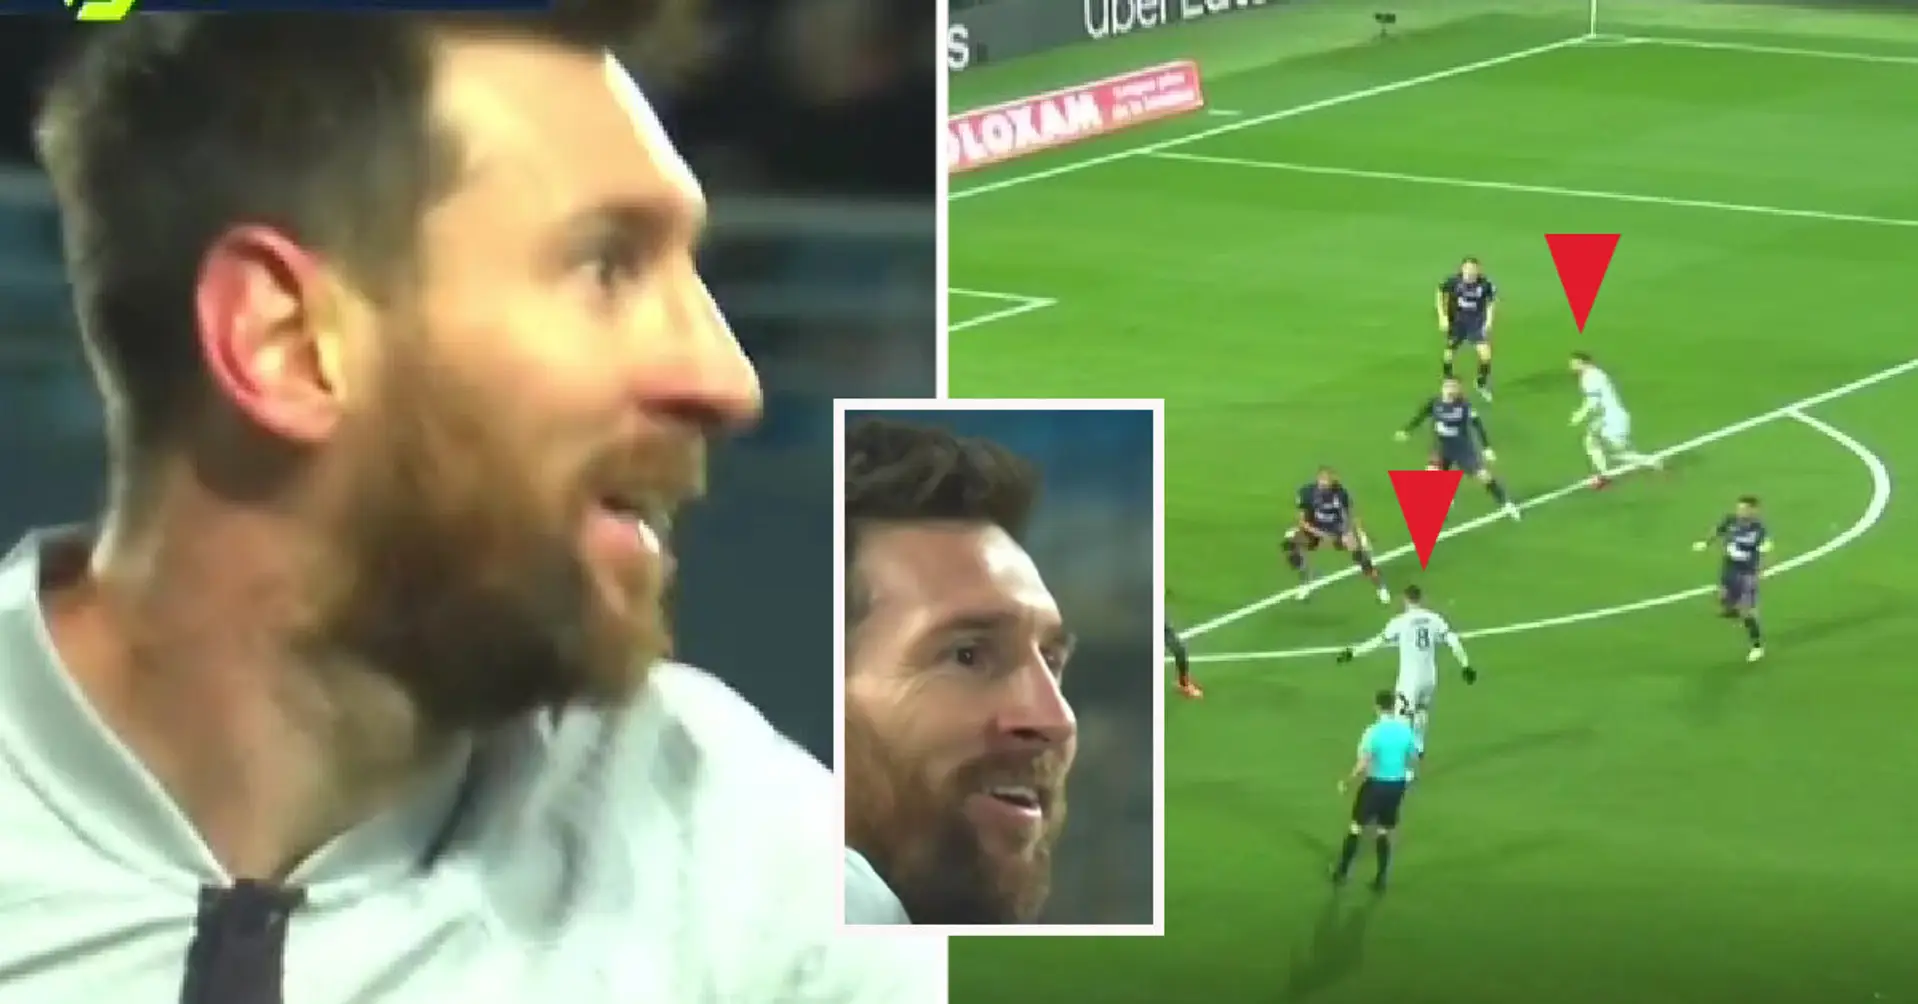 2 Sekunden Größe: Messi traf nach einem cleveren Assist - der Ball flog an 5 Verteidigern vorbei